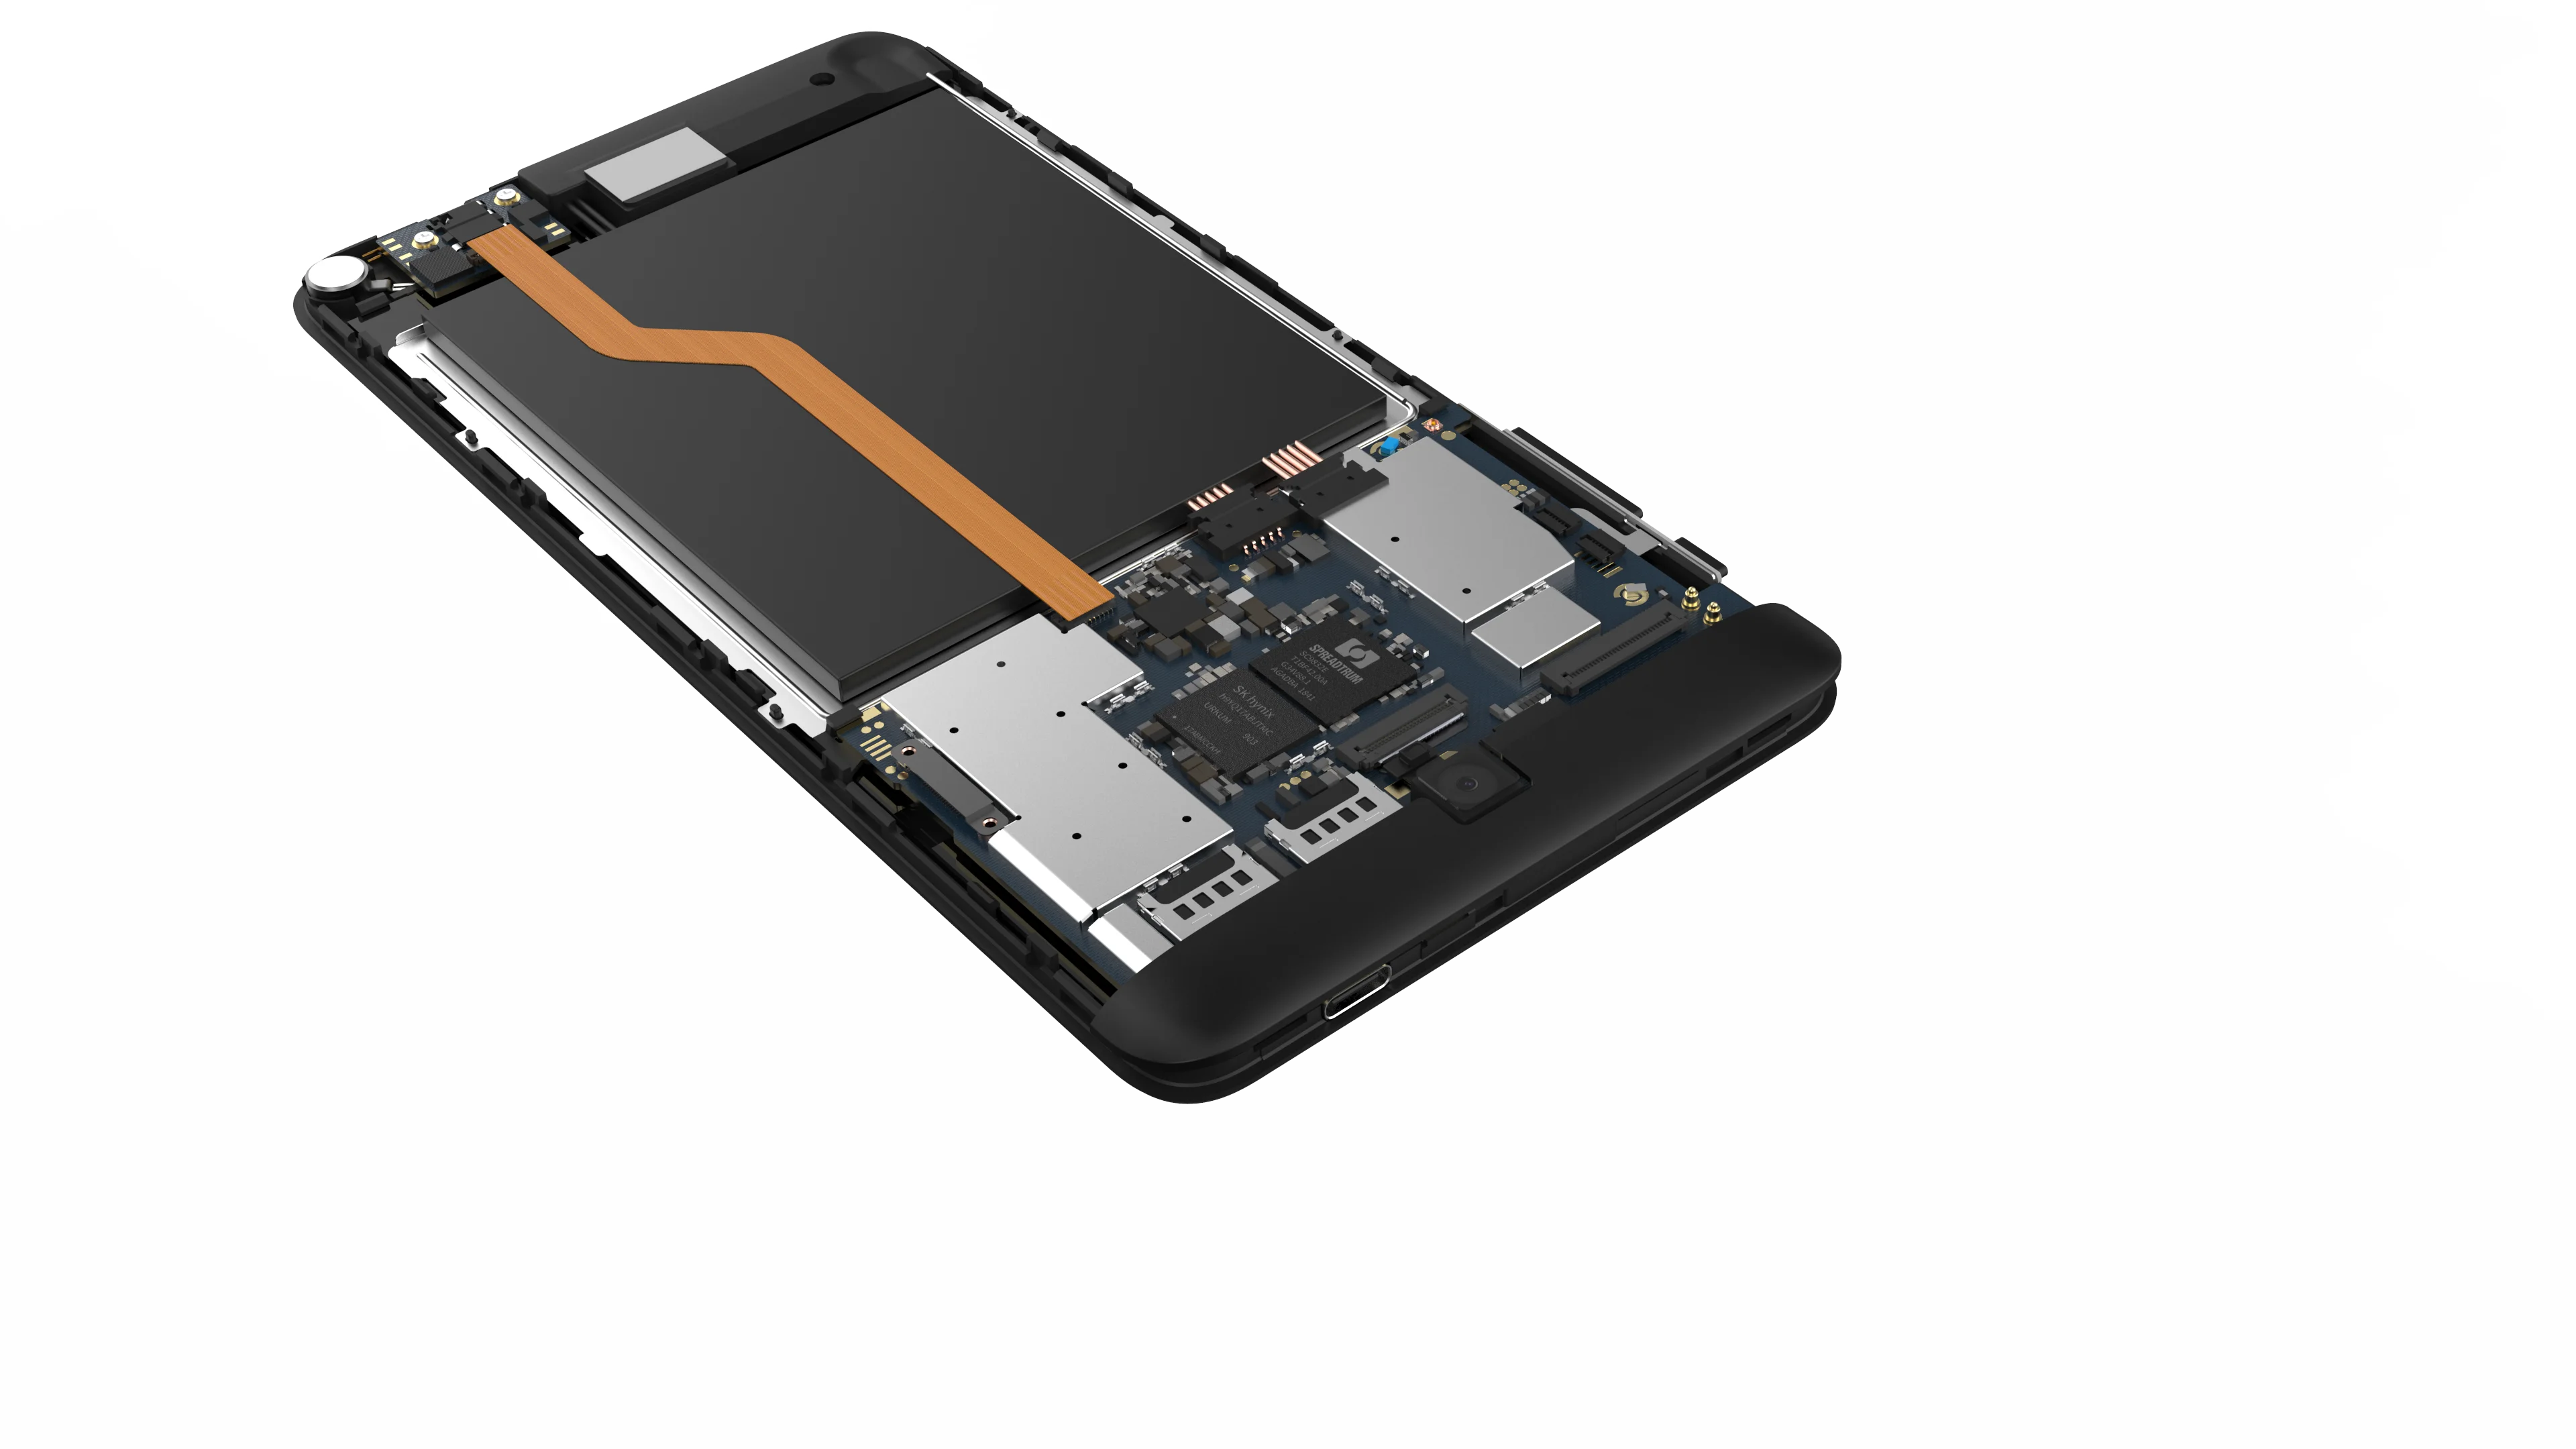 Ветвью ALLDOCUBE и ipaly7T 4G планшет Andriod9.0 6,98 дюймов SC9832E 1,4 ГГц ARM-Cortex A53 Quad core 2 Гб RAM 32 Гб Встроенная память планшет с двумя камерами